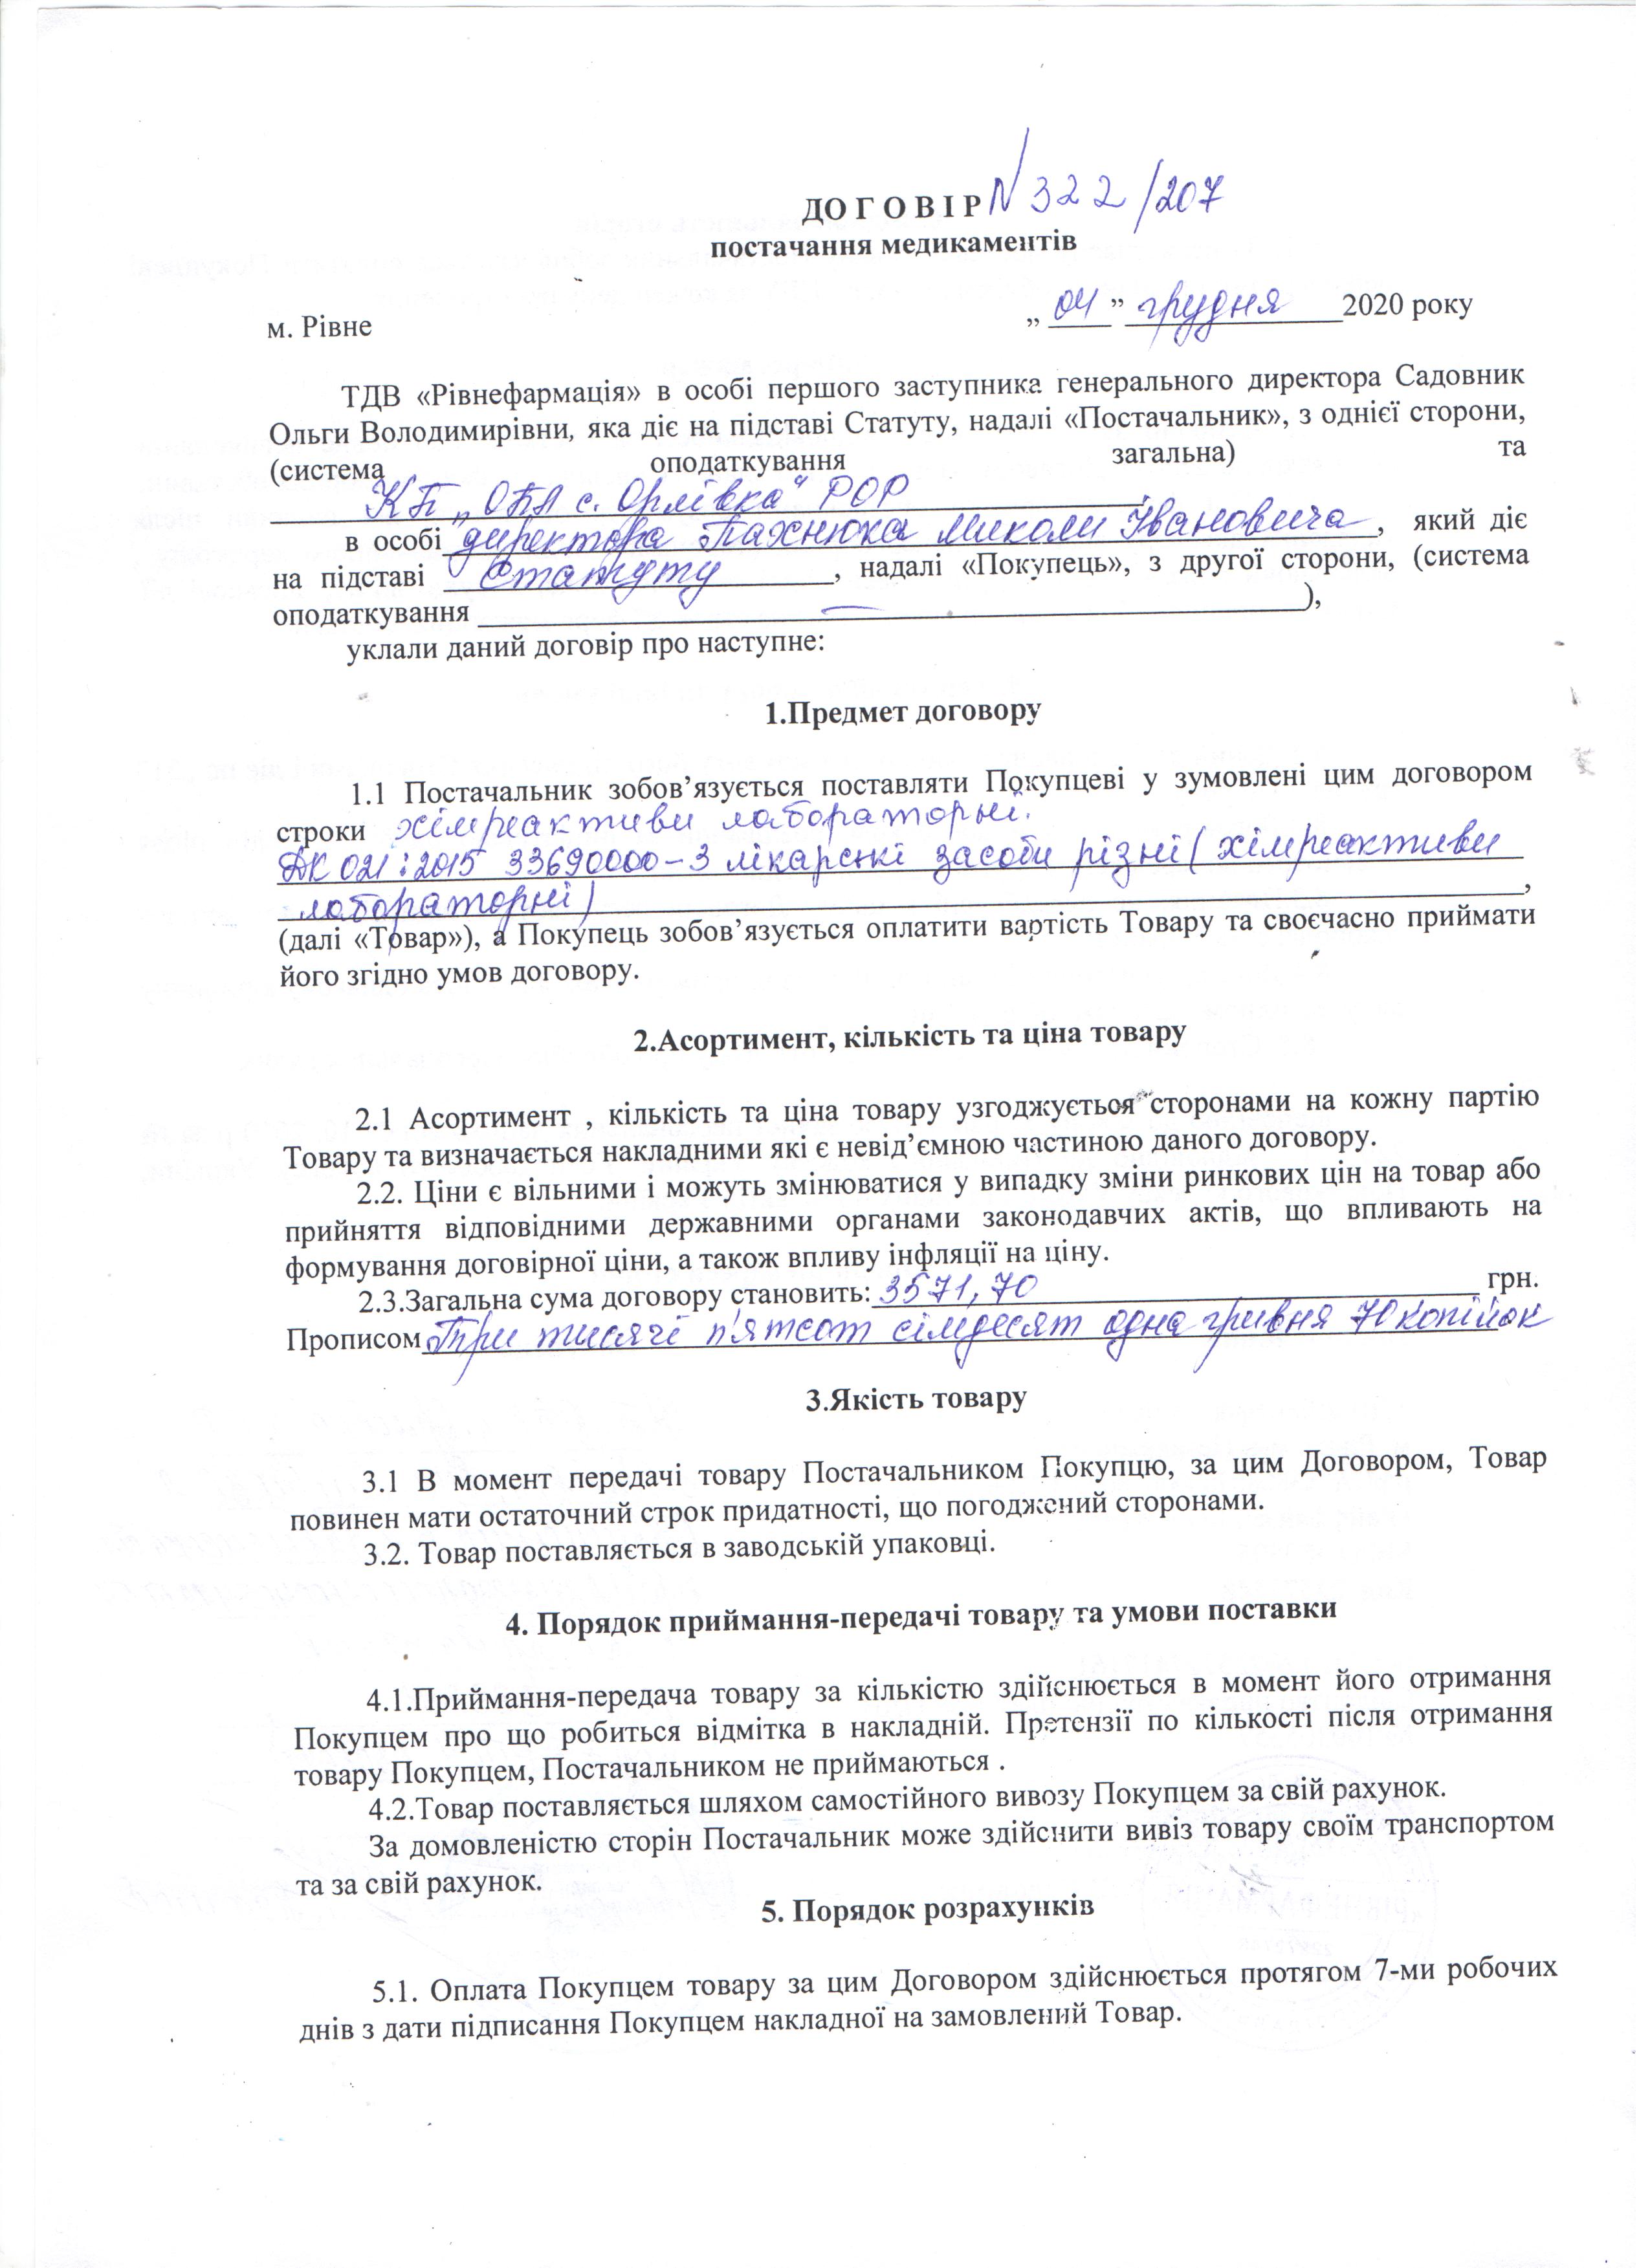 Договір №322/207 від 04.12.2020 р.